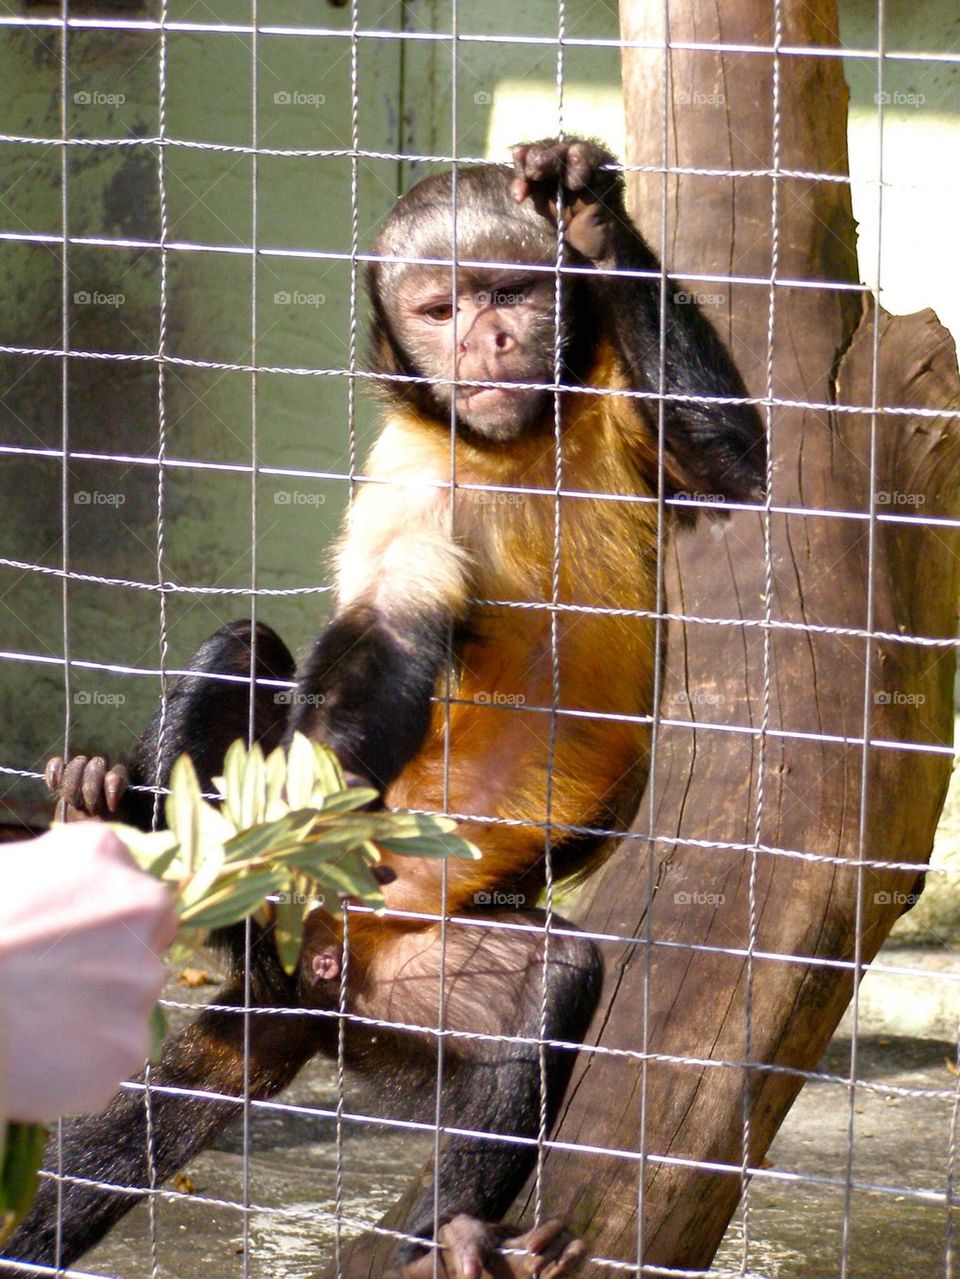 Feeding monkey